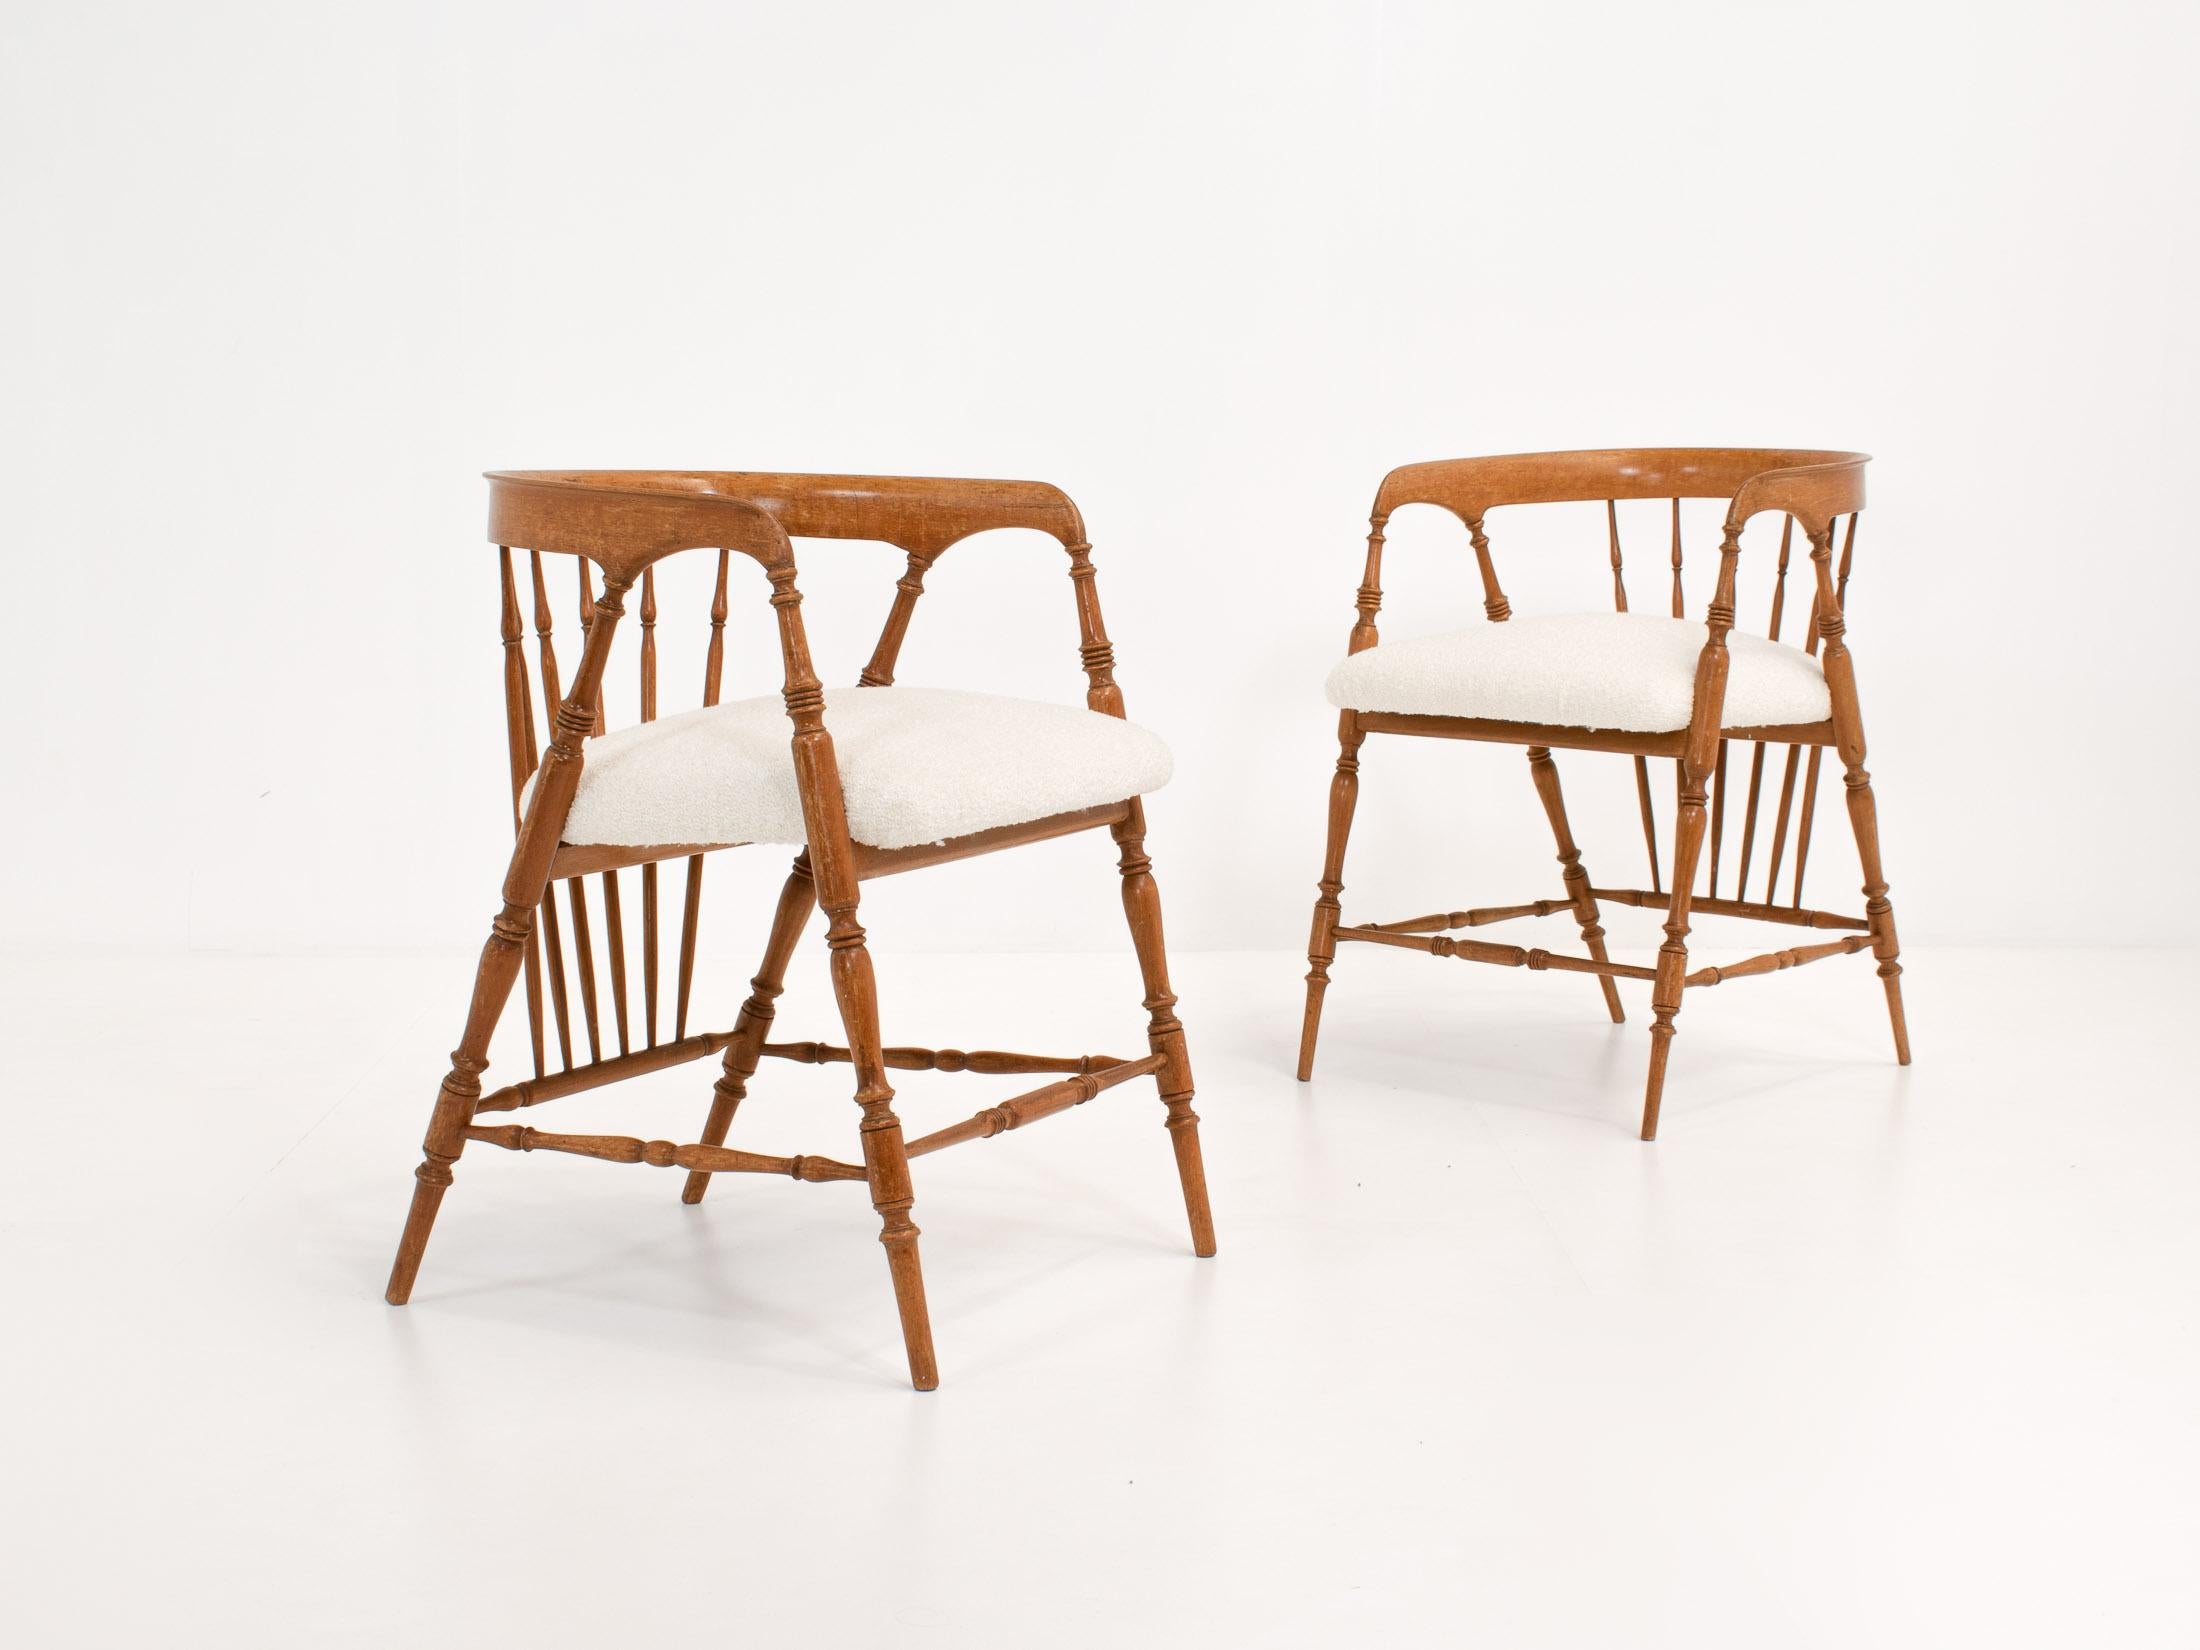 Paire de chaises du début du XXe siècle avec dossier et pieds arrondis en forme de fuseau. Inspiré par le design des chaises de fumeurs en forme d'arc ou de capitaine du XIXe siècle. Ces chaises allient élégance et confort, et leurs couleurs douces